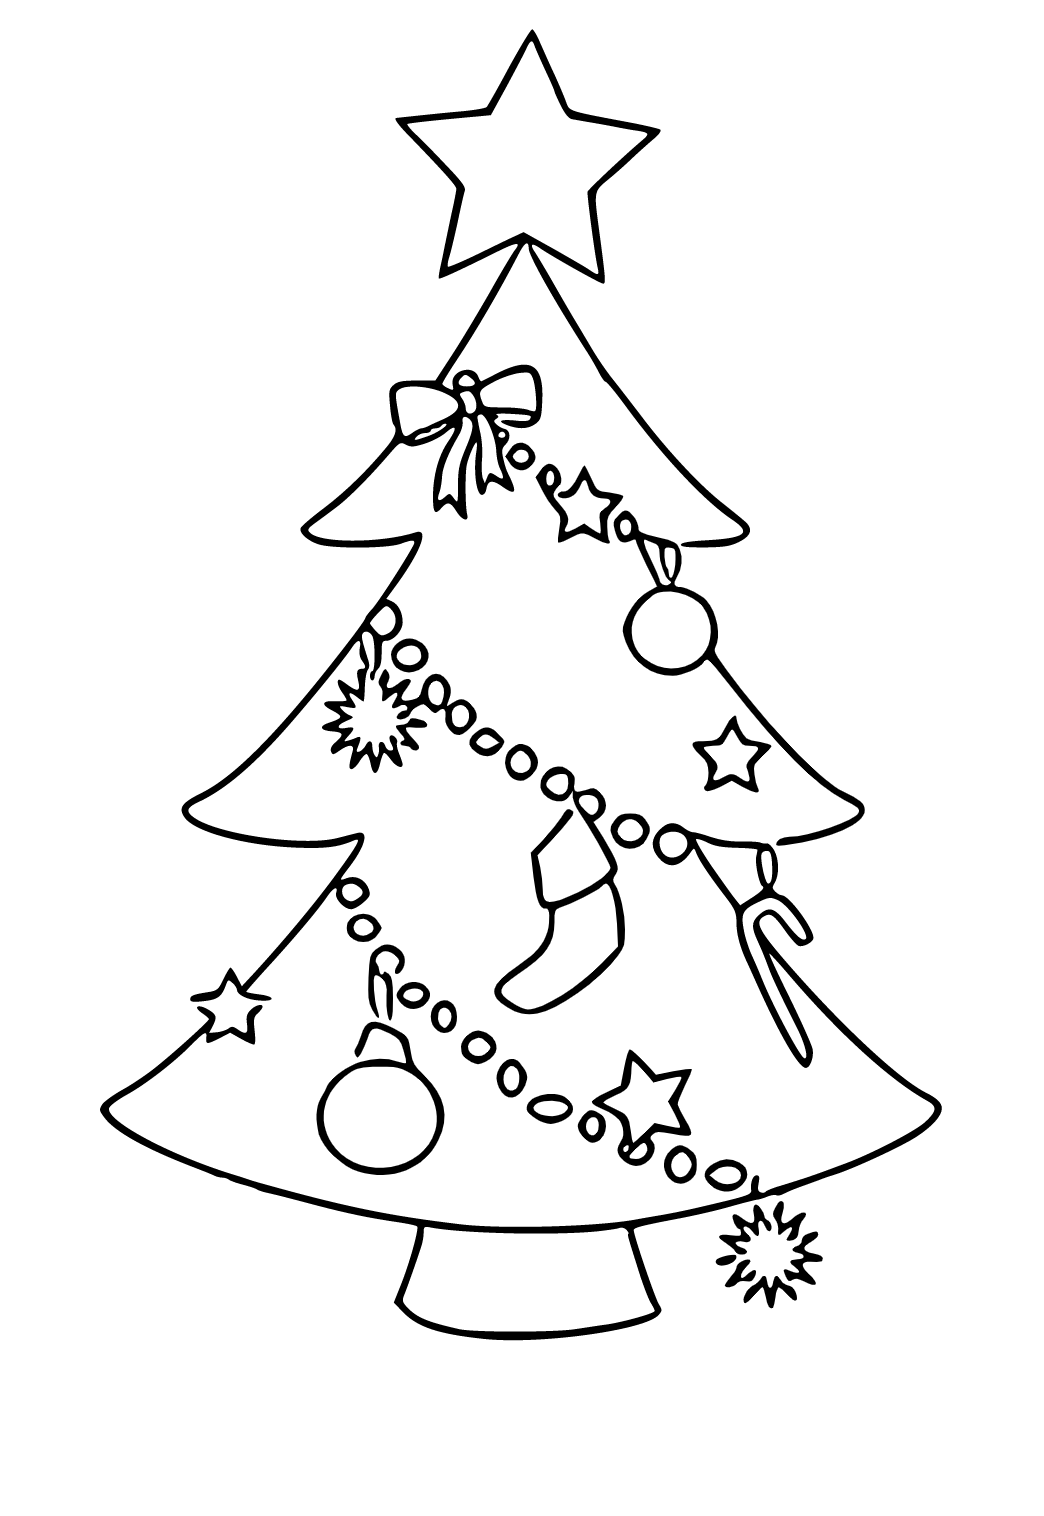 Dibujo e Imagen Arbol de Navidad Dibujos Animados para Colorear y Imprimir  Gratis para Adultos, Niñas y Niños 